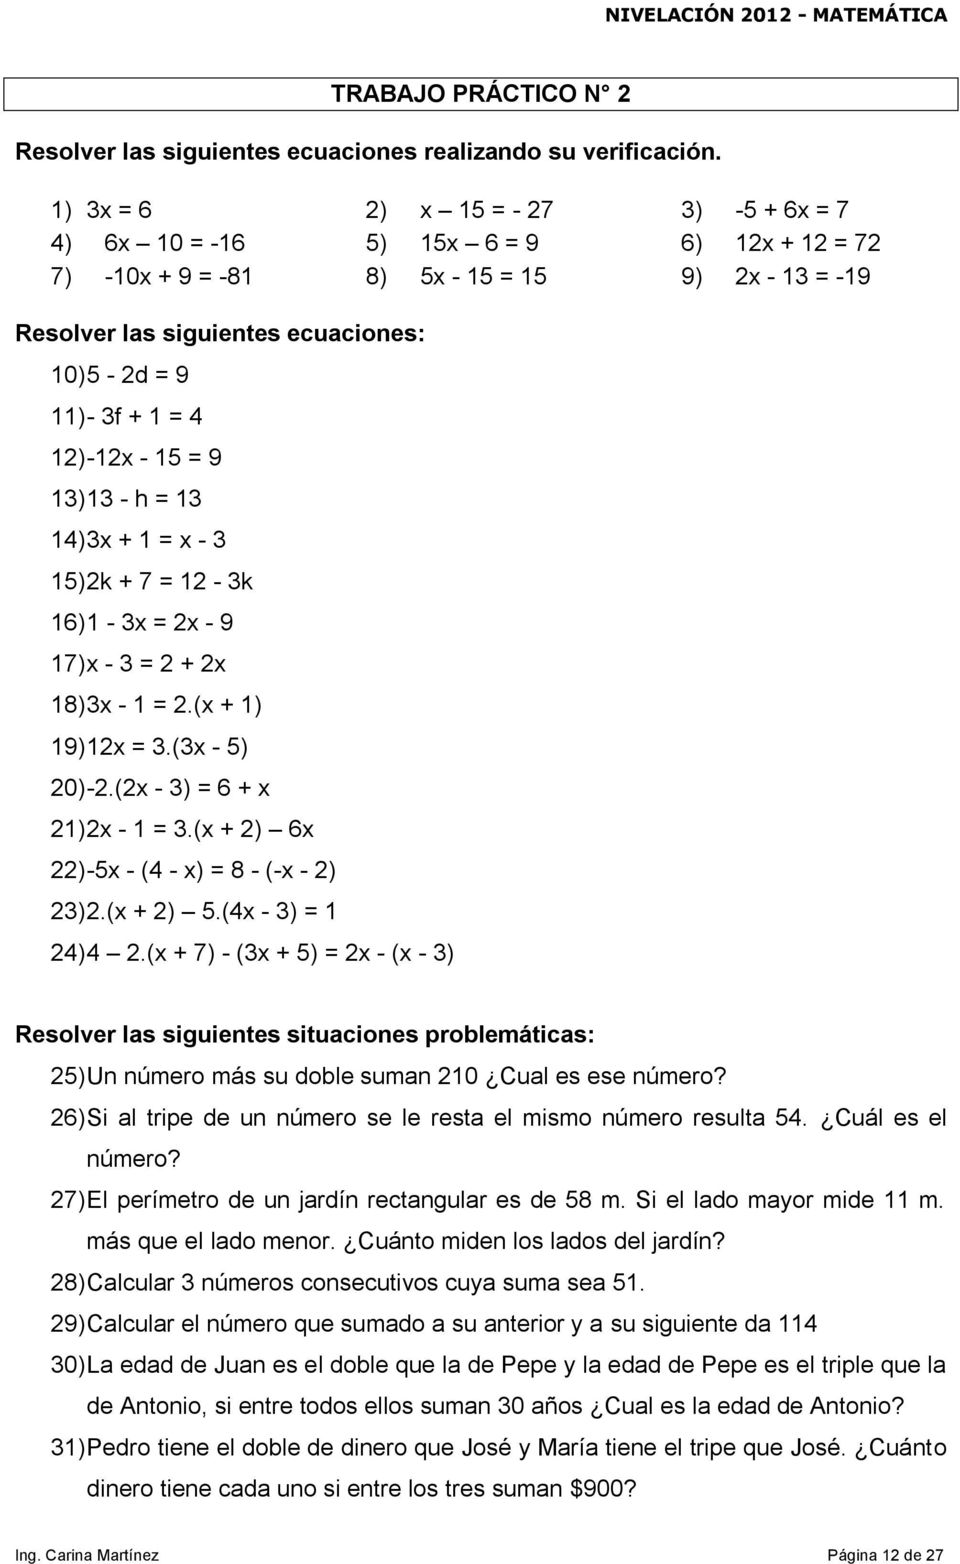 4 12) -12x - 15 = 9 13) 13 - h = 13 14) 3x + 1 = x - 3 15) 2k + 7 = 12-3k 16) 1-3x = 2x - 9 17) x - 3 = 2 + 2x 18) 3x - 1 = 2.(x + 1) 19) 12x = 3.(3x - 5) 20) -2.(2x - 3) = 6 + x 21) 2x - 1 = 3.